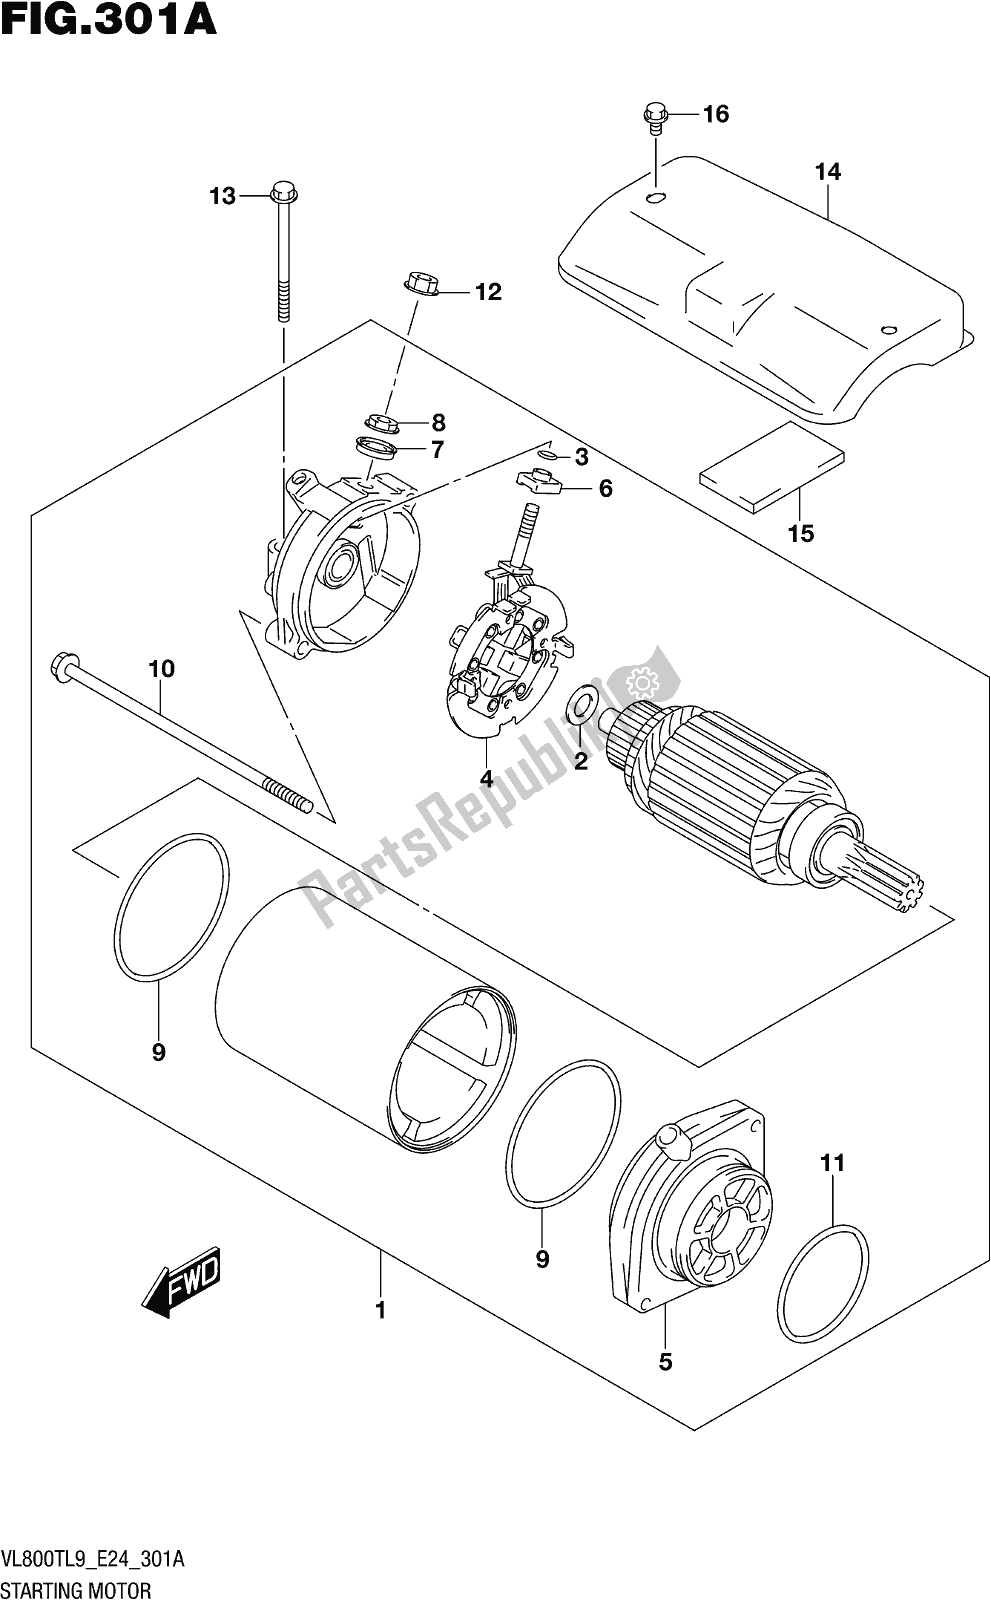 Toutes les pièces pour le Fig. 301a Starting Motor du Suzuki VL 800T 2019